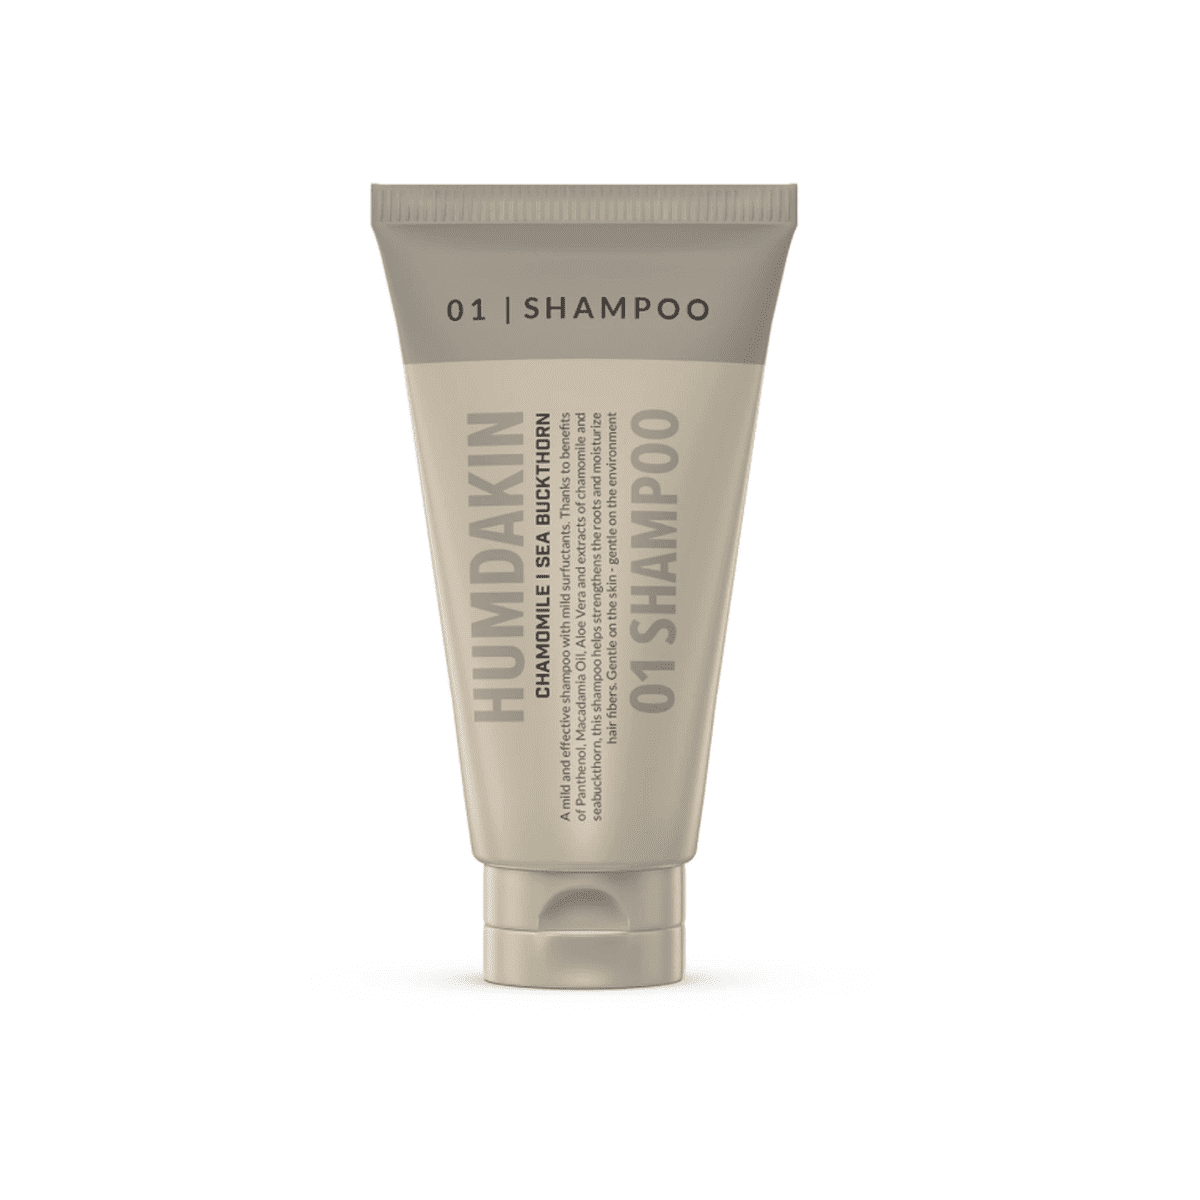 Se Humdakin 01 Shampoo - 30ml (rejsestørrelse) - kamille og havtorn hos Bad&Design